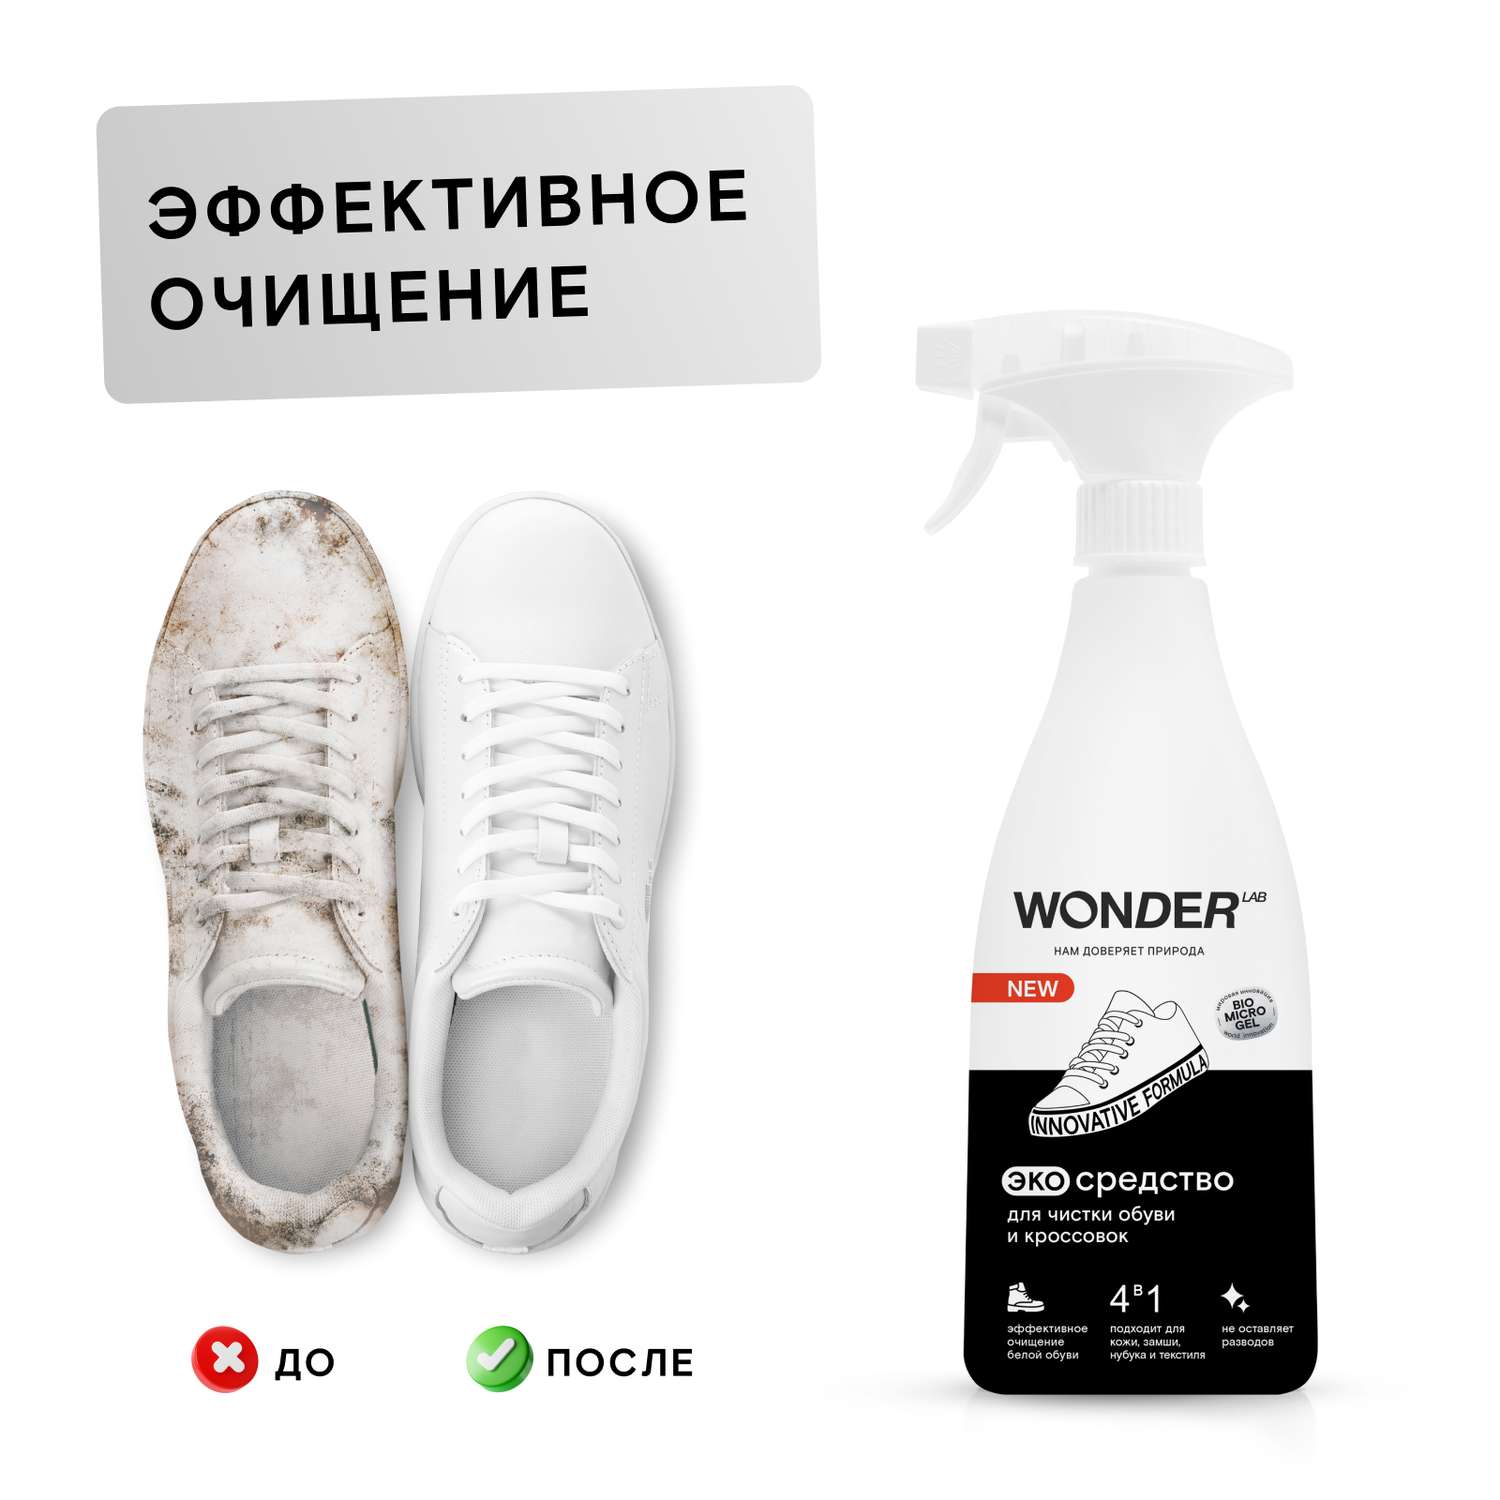 Cредство для чистки обуви и кроссовок Wonder Lab 0.55л - фото 6